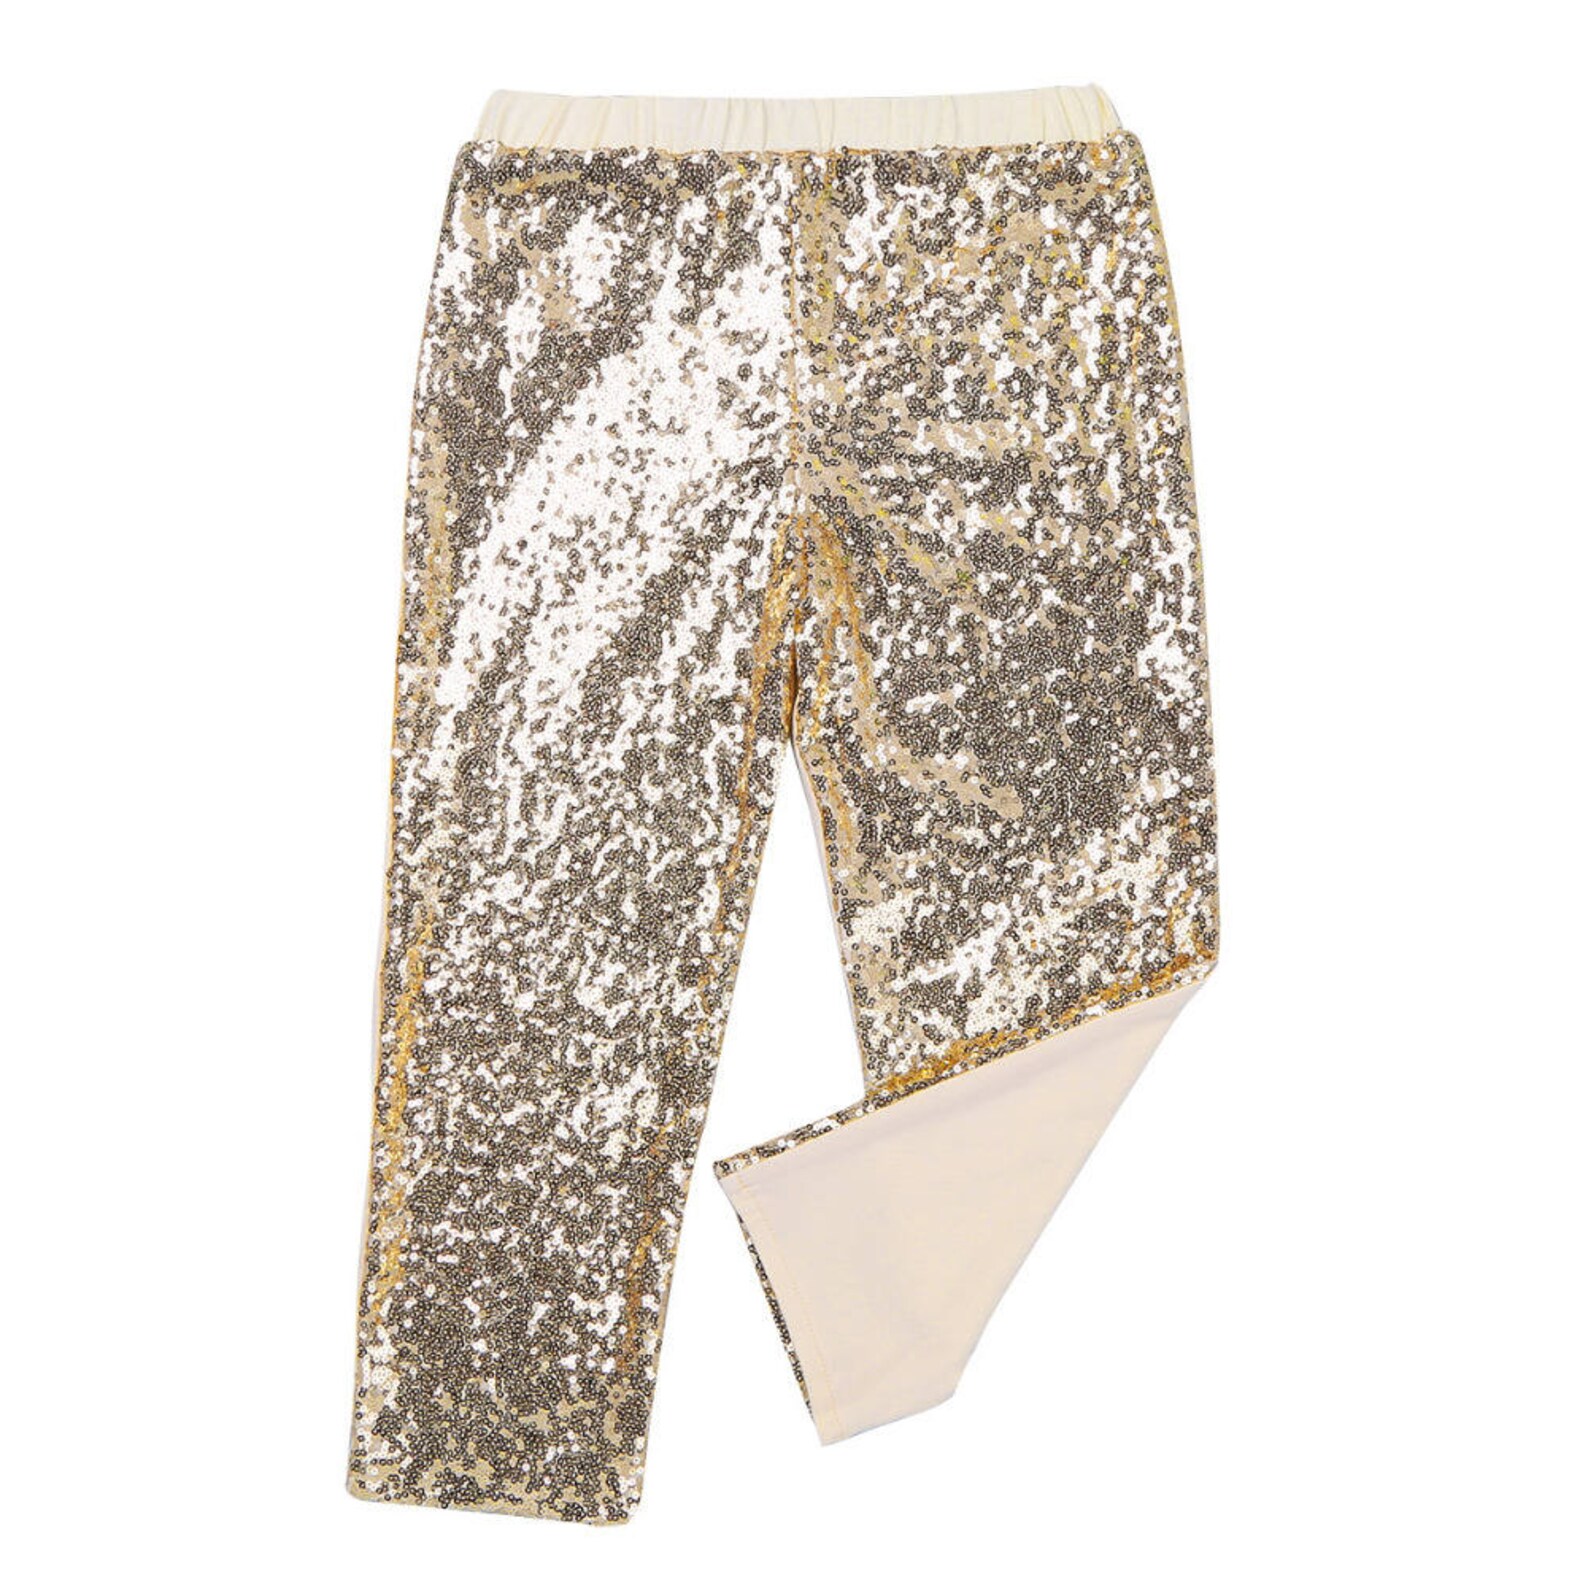 Gold Sequin Pants / Gold Sequin Leggings / Gold Sparkle Pants | Etsy